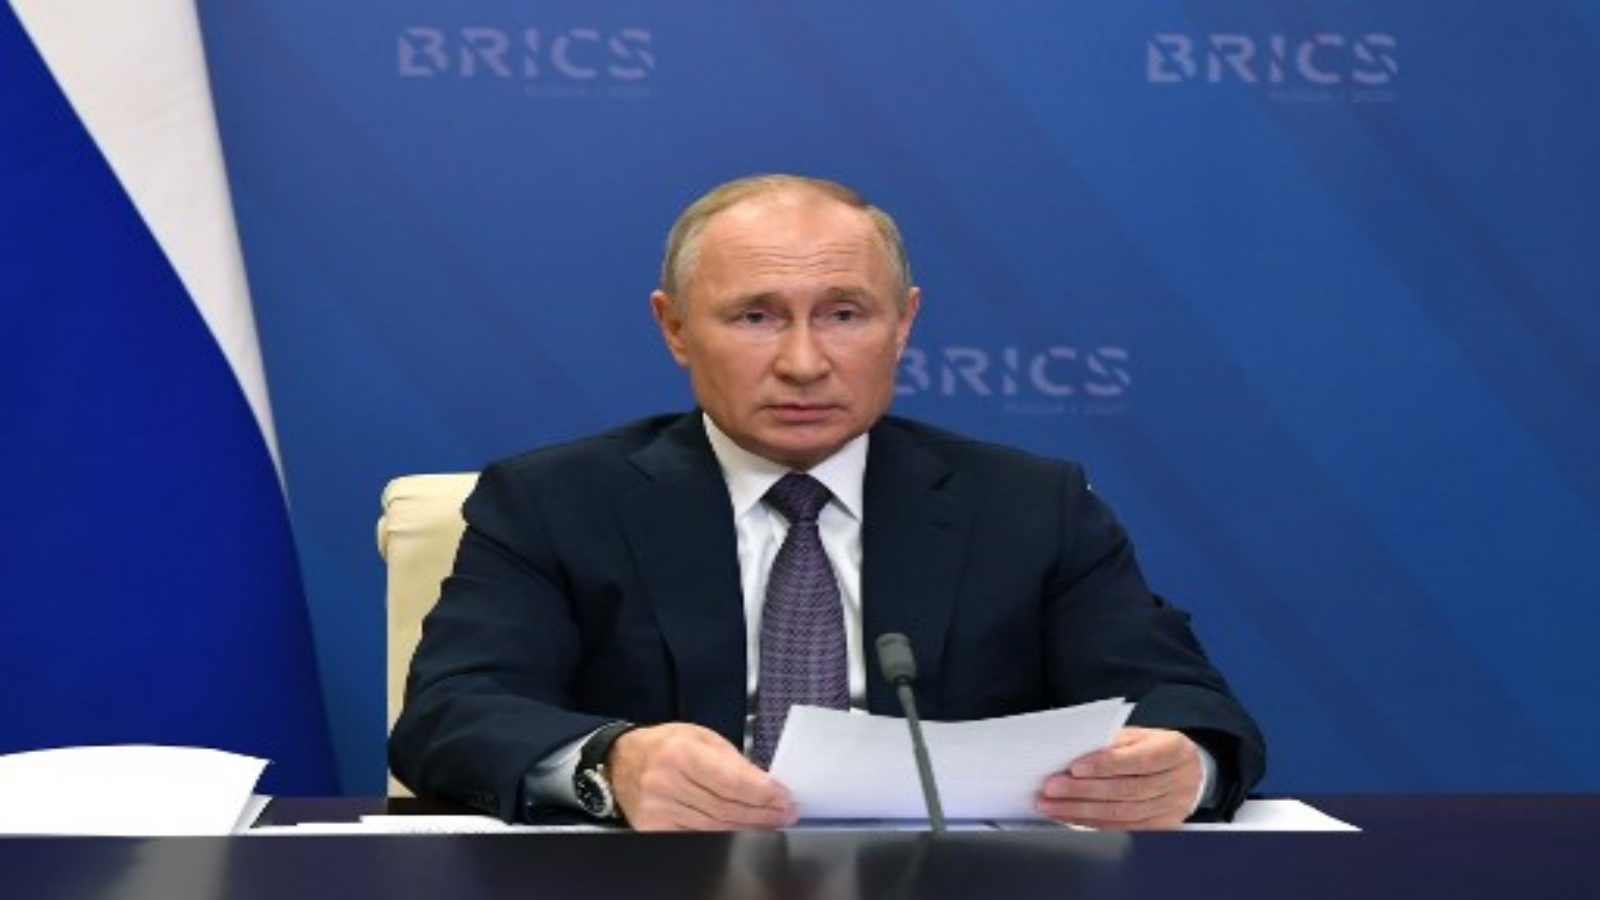 الرئيس الروسي فلاديمير بوتين يحضر قمة البريكس الثانية عشرة عبر الفيديو في مقر الإقامة الحكومي في نوفو أوغاريوفو خارج موسكو في 17 نوفمبر 2020.